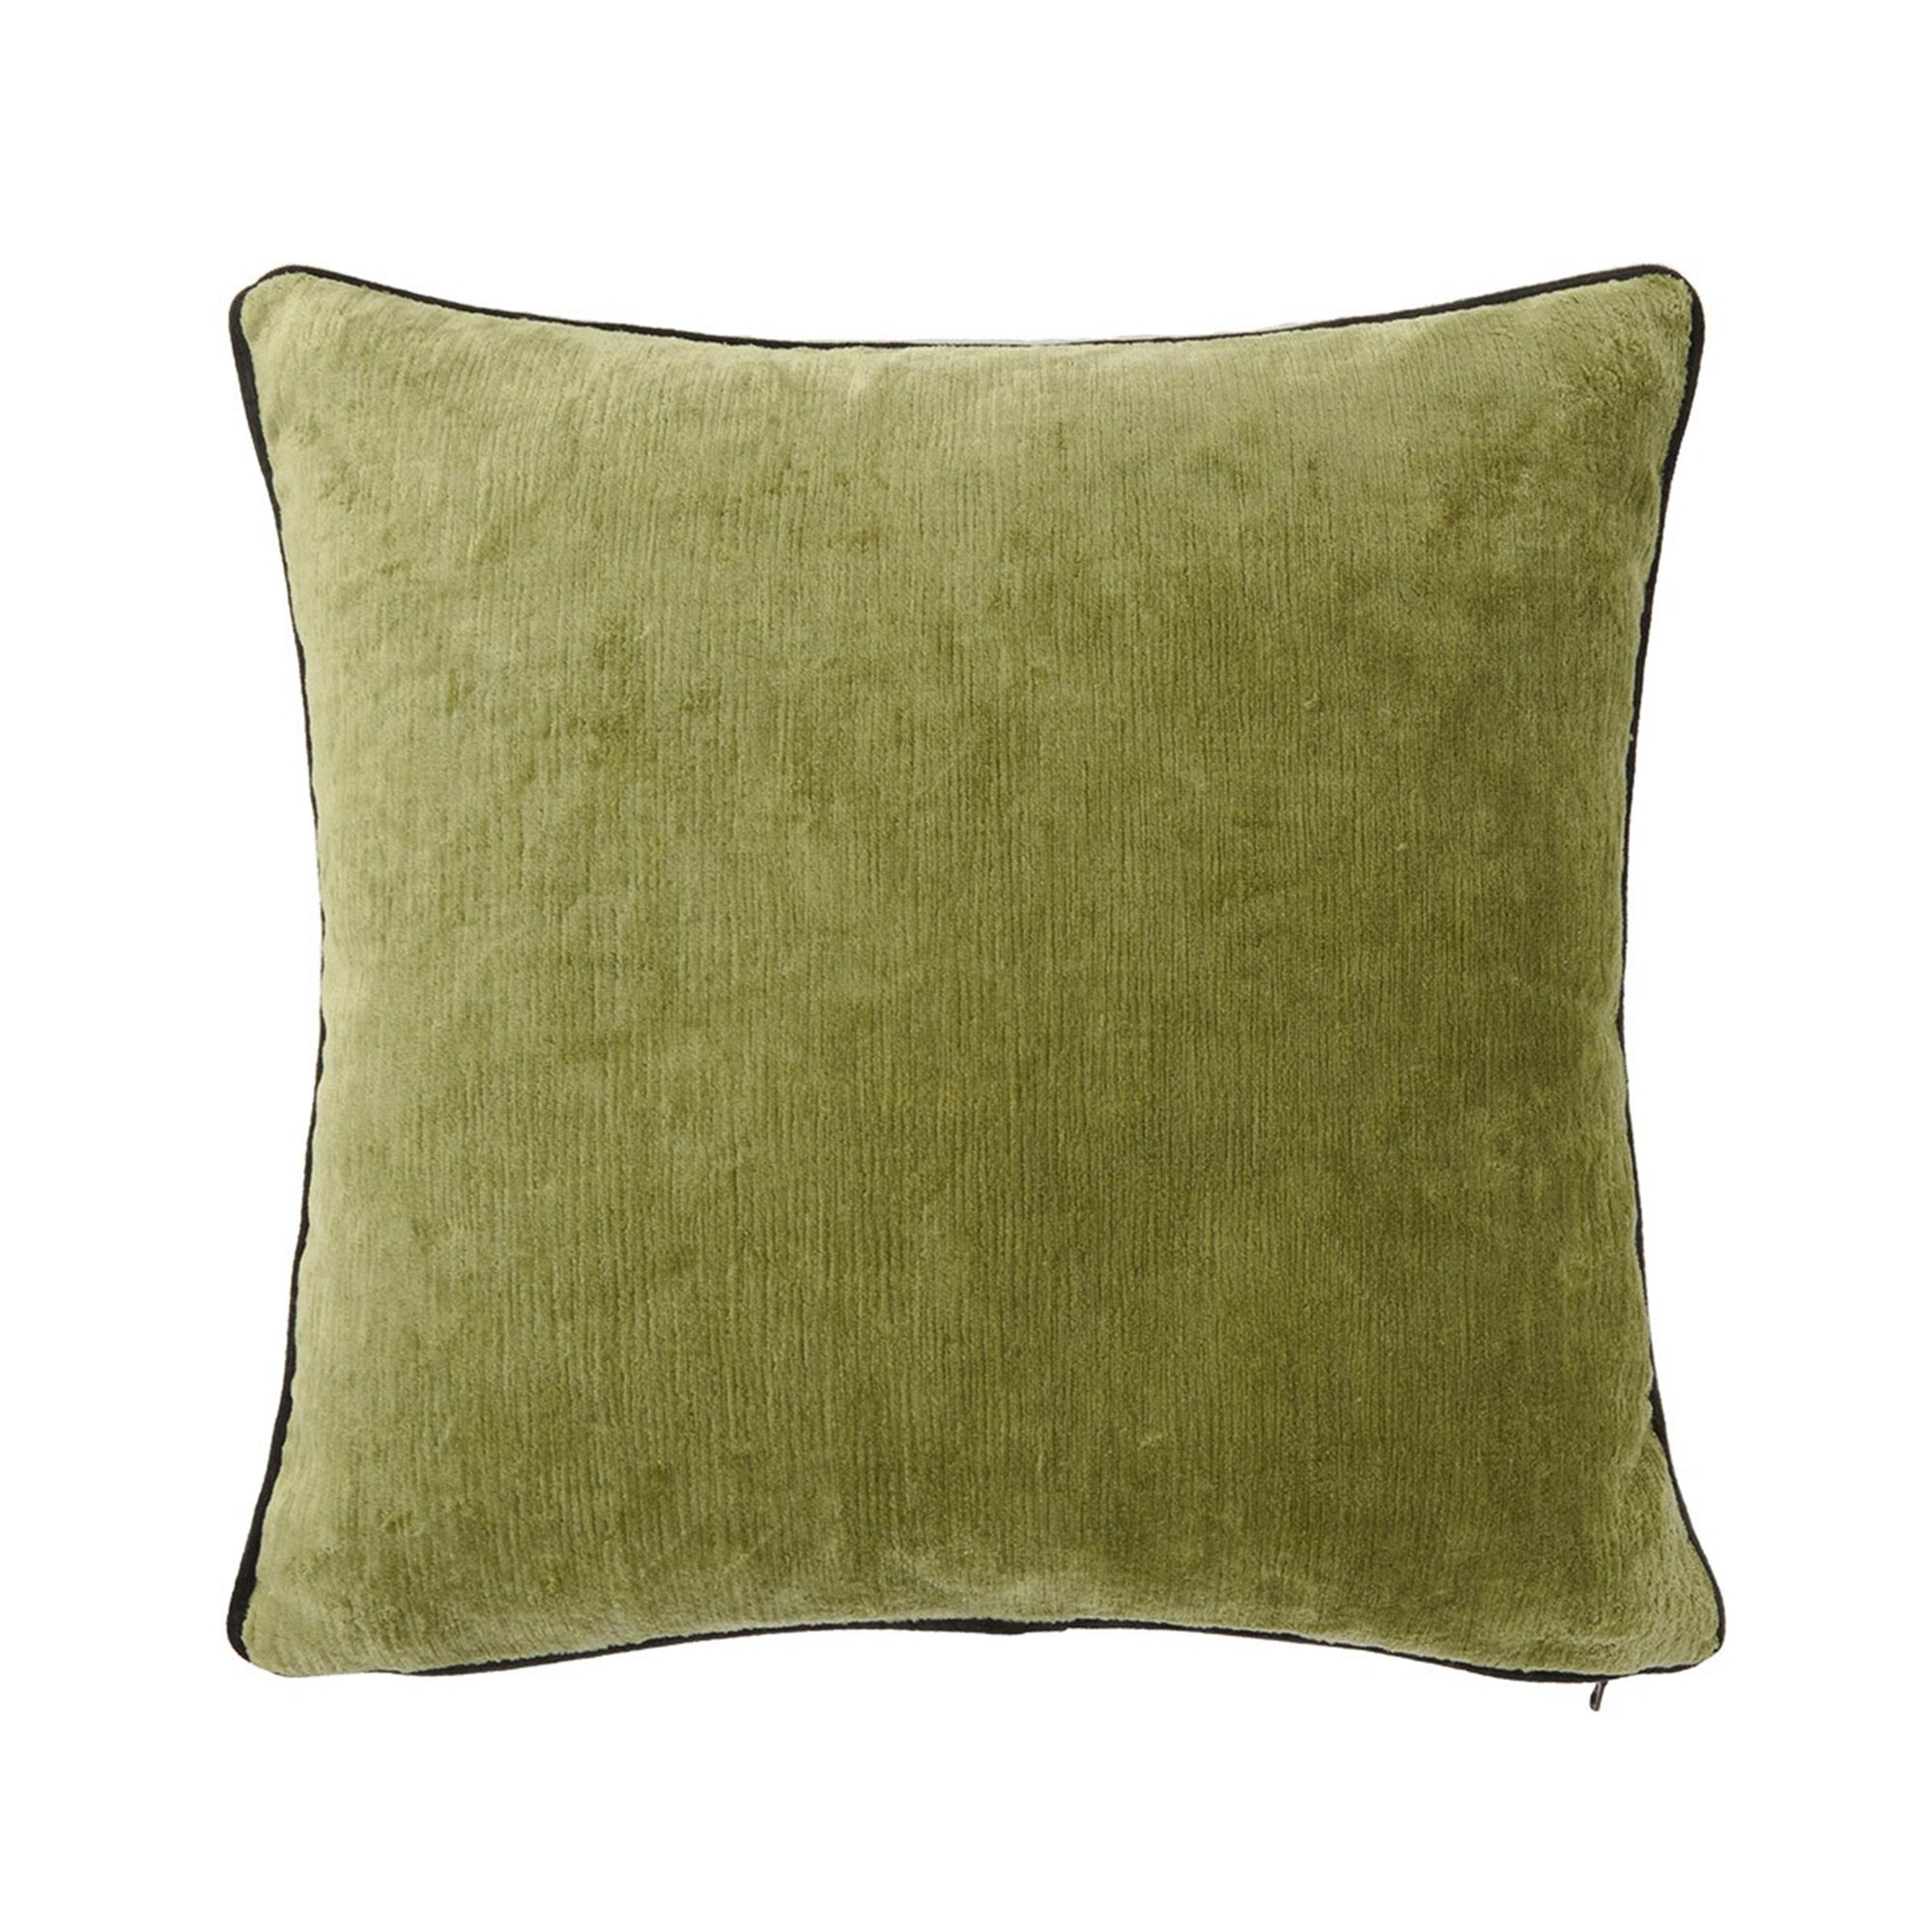 Silo Image of Yves Delorme Iosis Boromee Square Decorative Pillow in Kaki Color